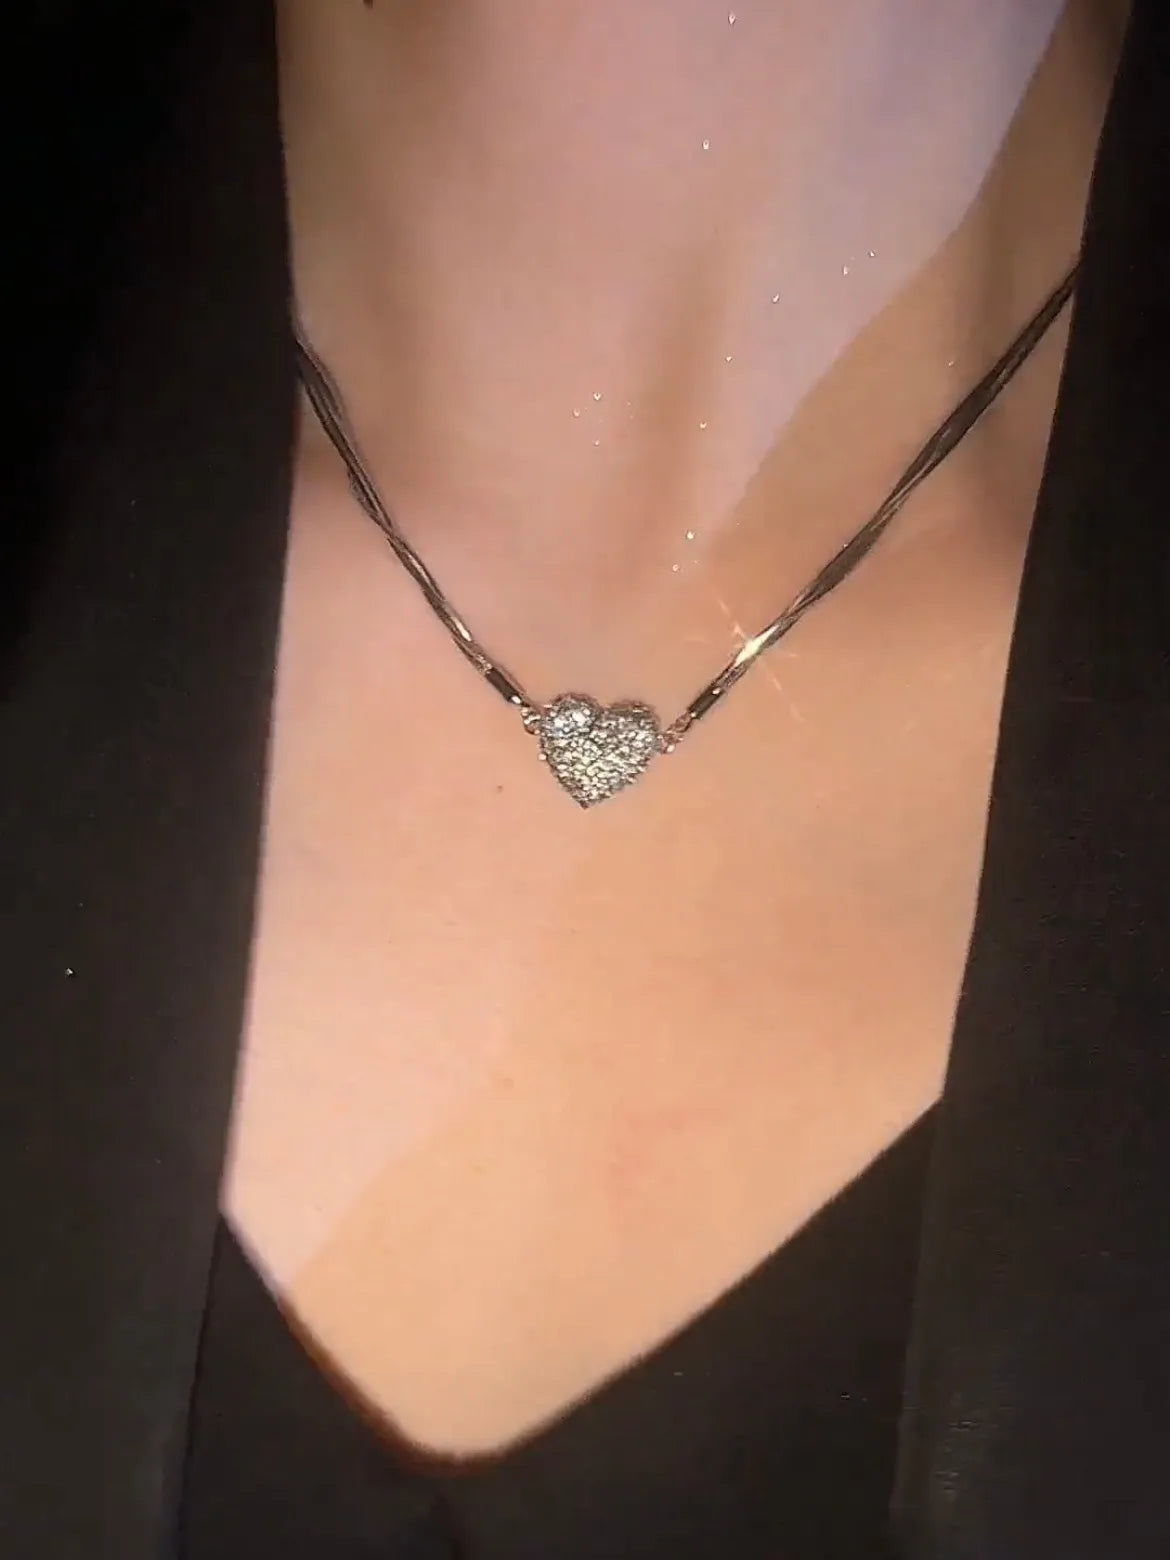 Exquisite Rhinestone Magnet Broken Heart Necklace